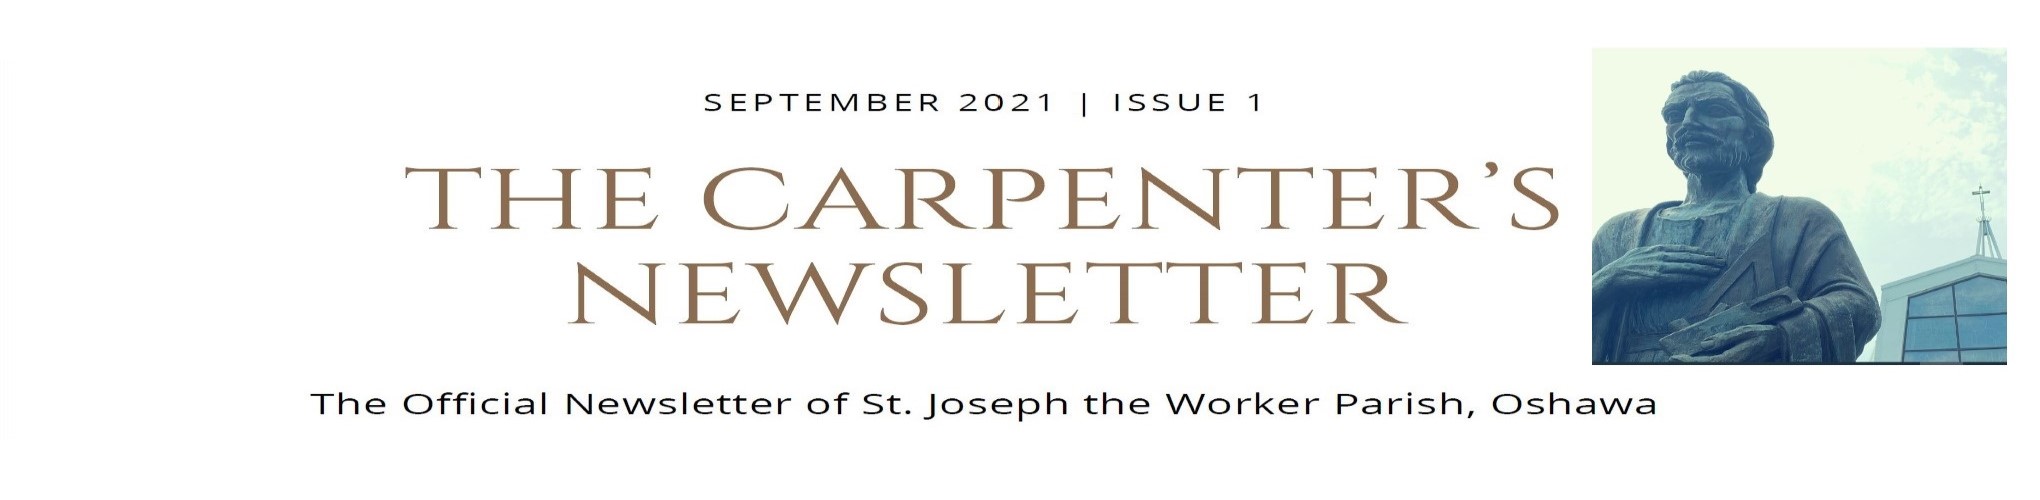 The Carpenter's Newsletter banner.jpg